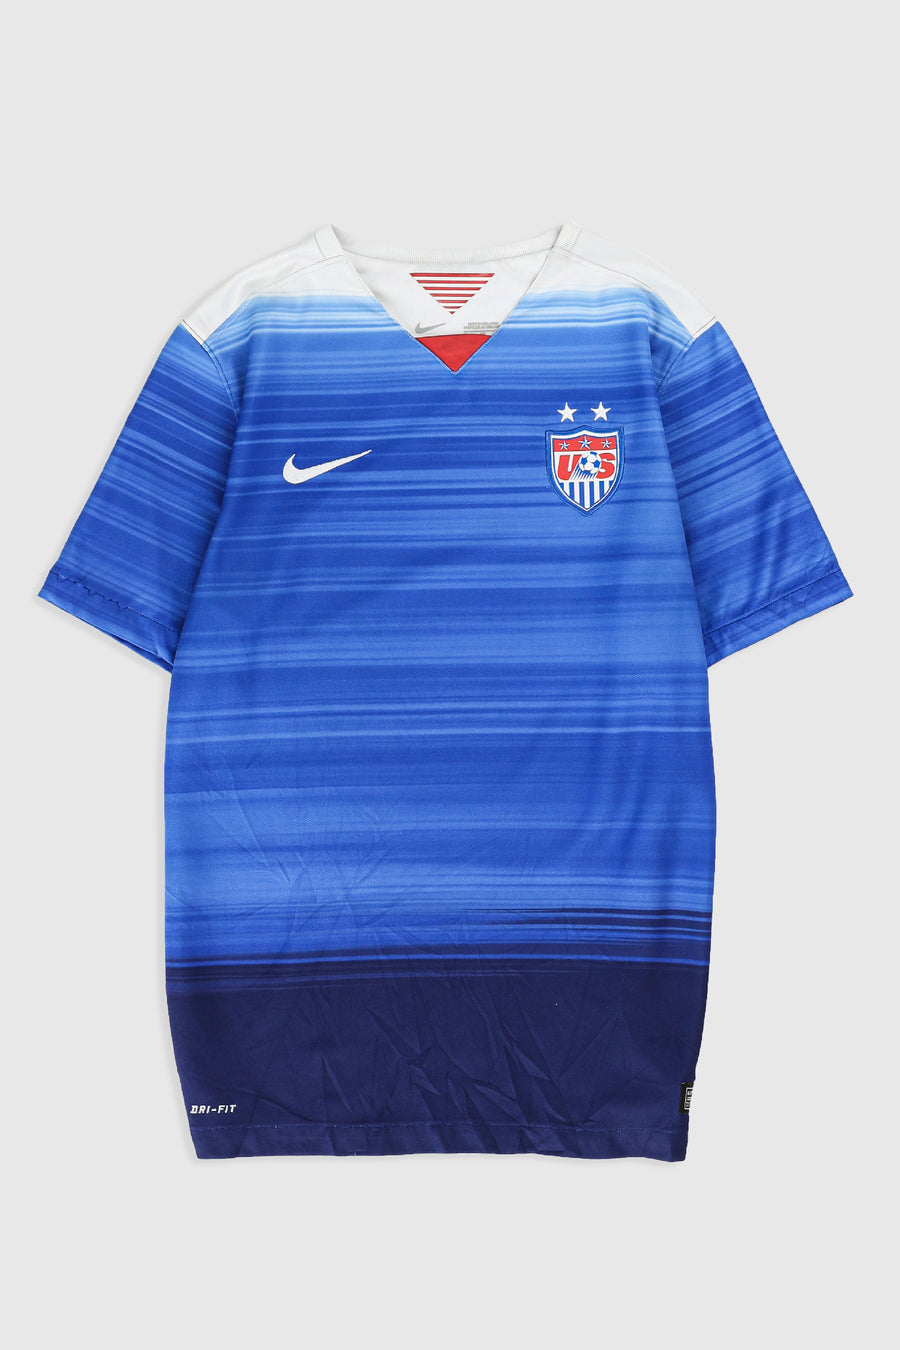 Team USA Soccer Jersey